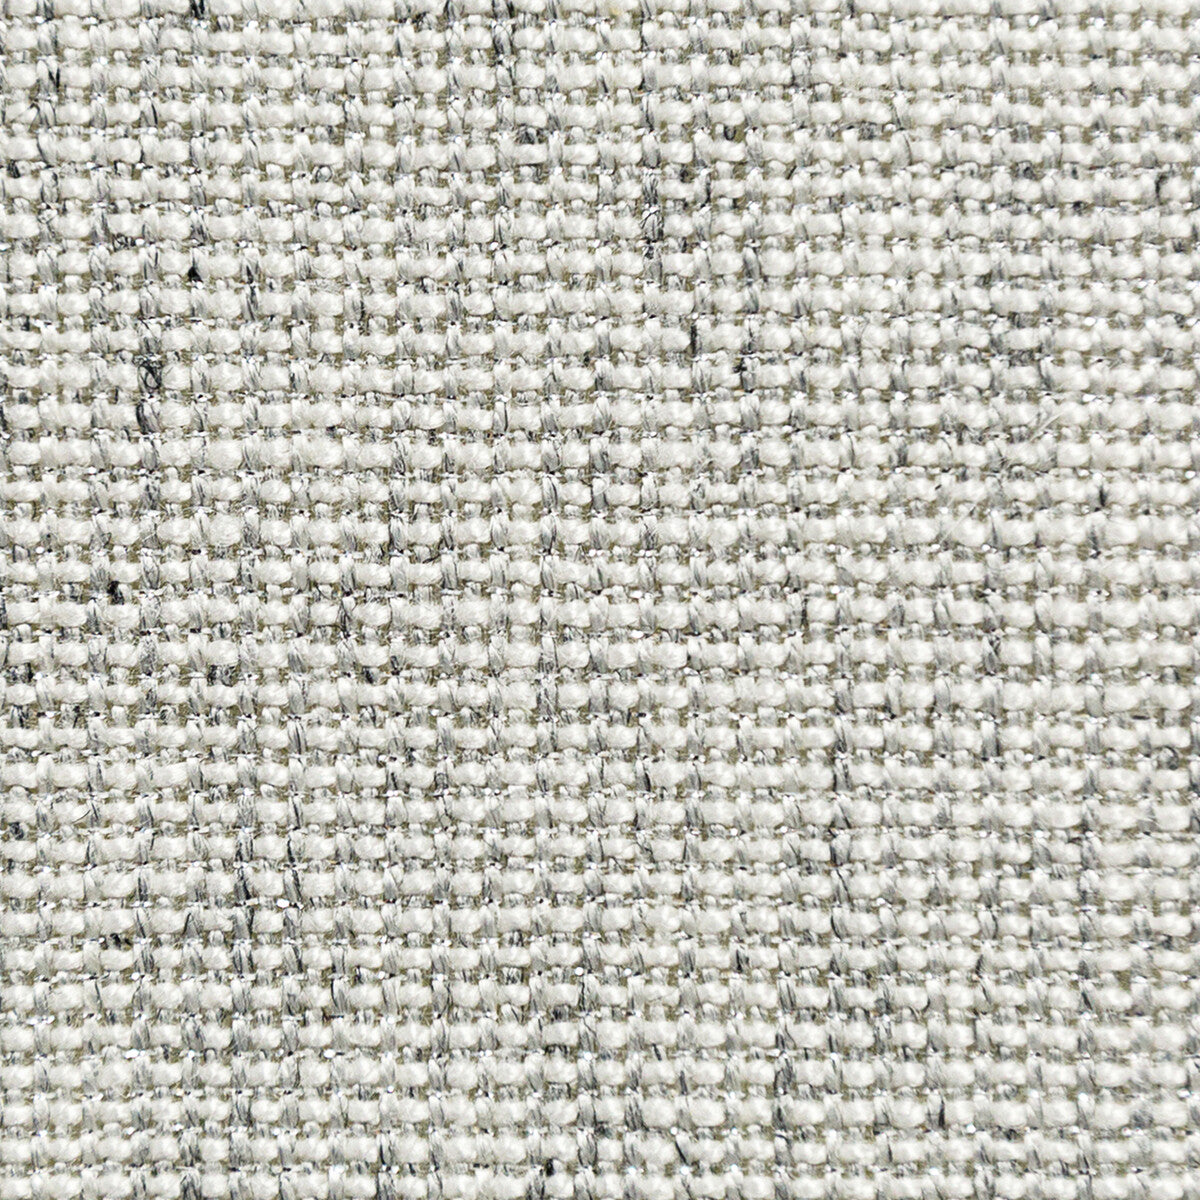 Kravet Basics fabric in 35785-11 color - pattern 35785.11.0 - by Kravet Basics